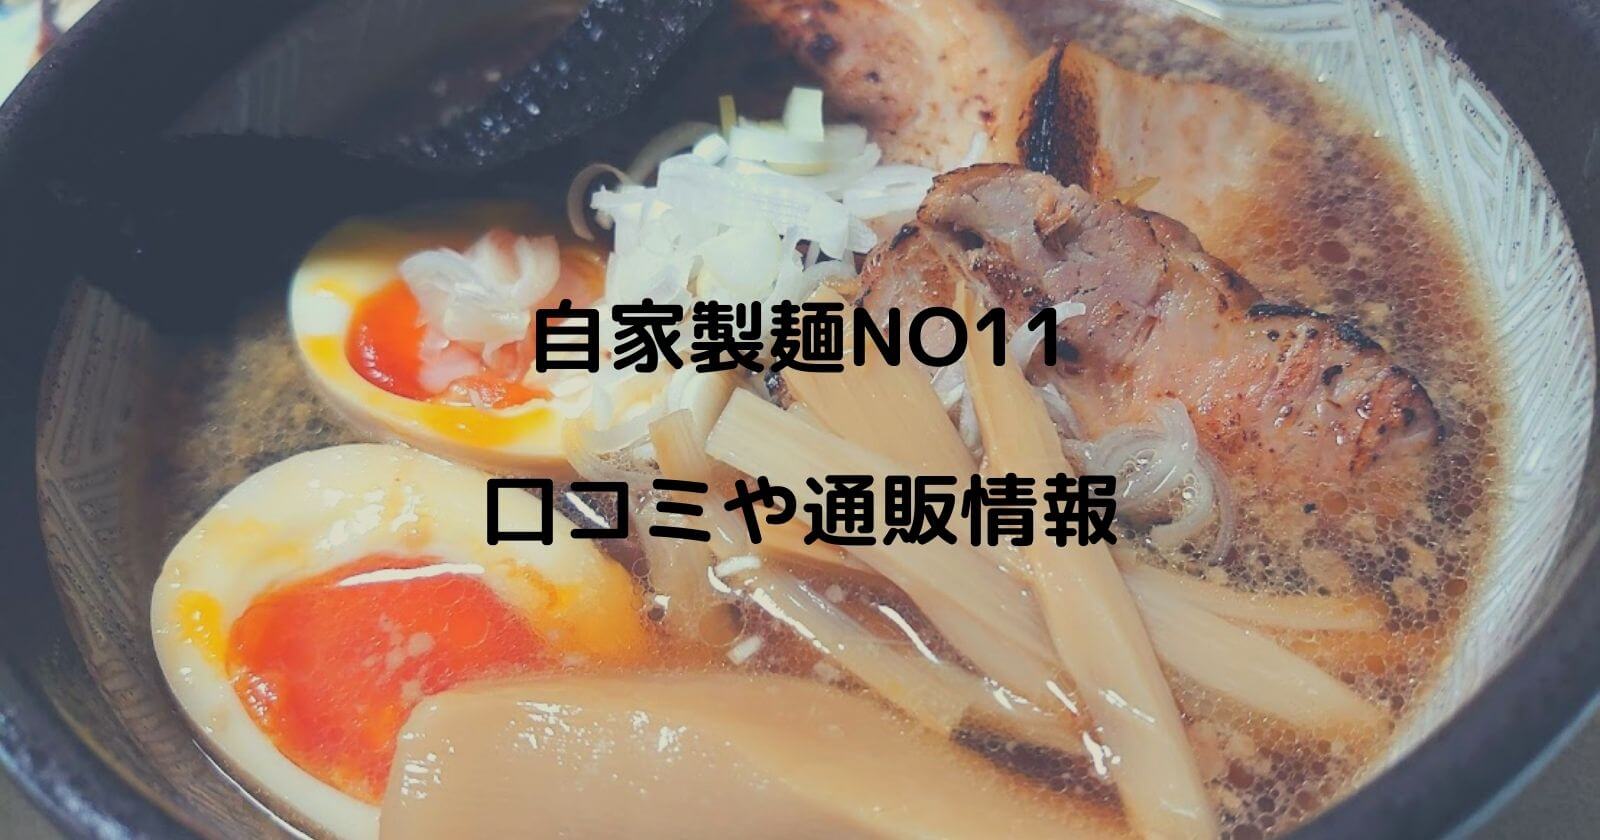 自家製麺NO11ラーメンの口コミ・通販